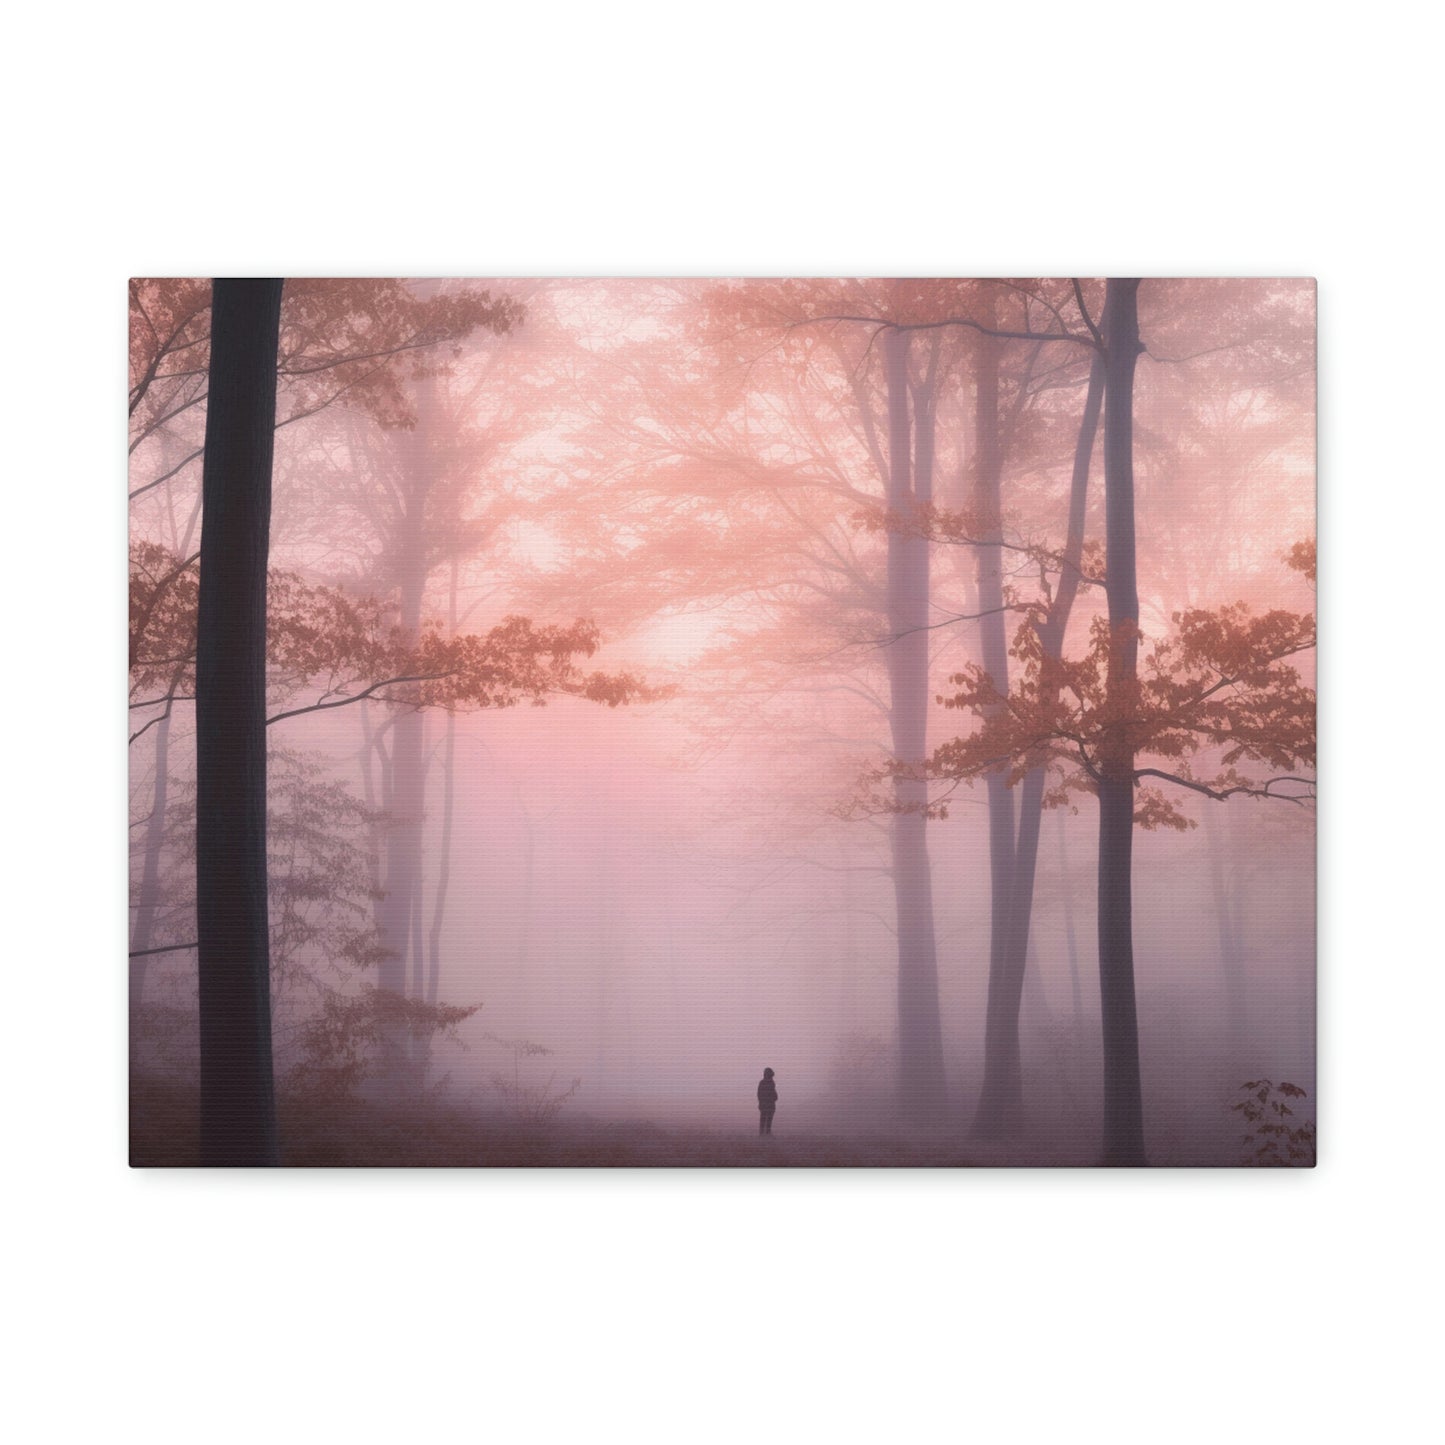 A walk through the fog